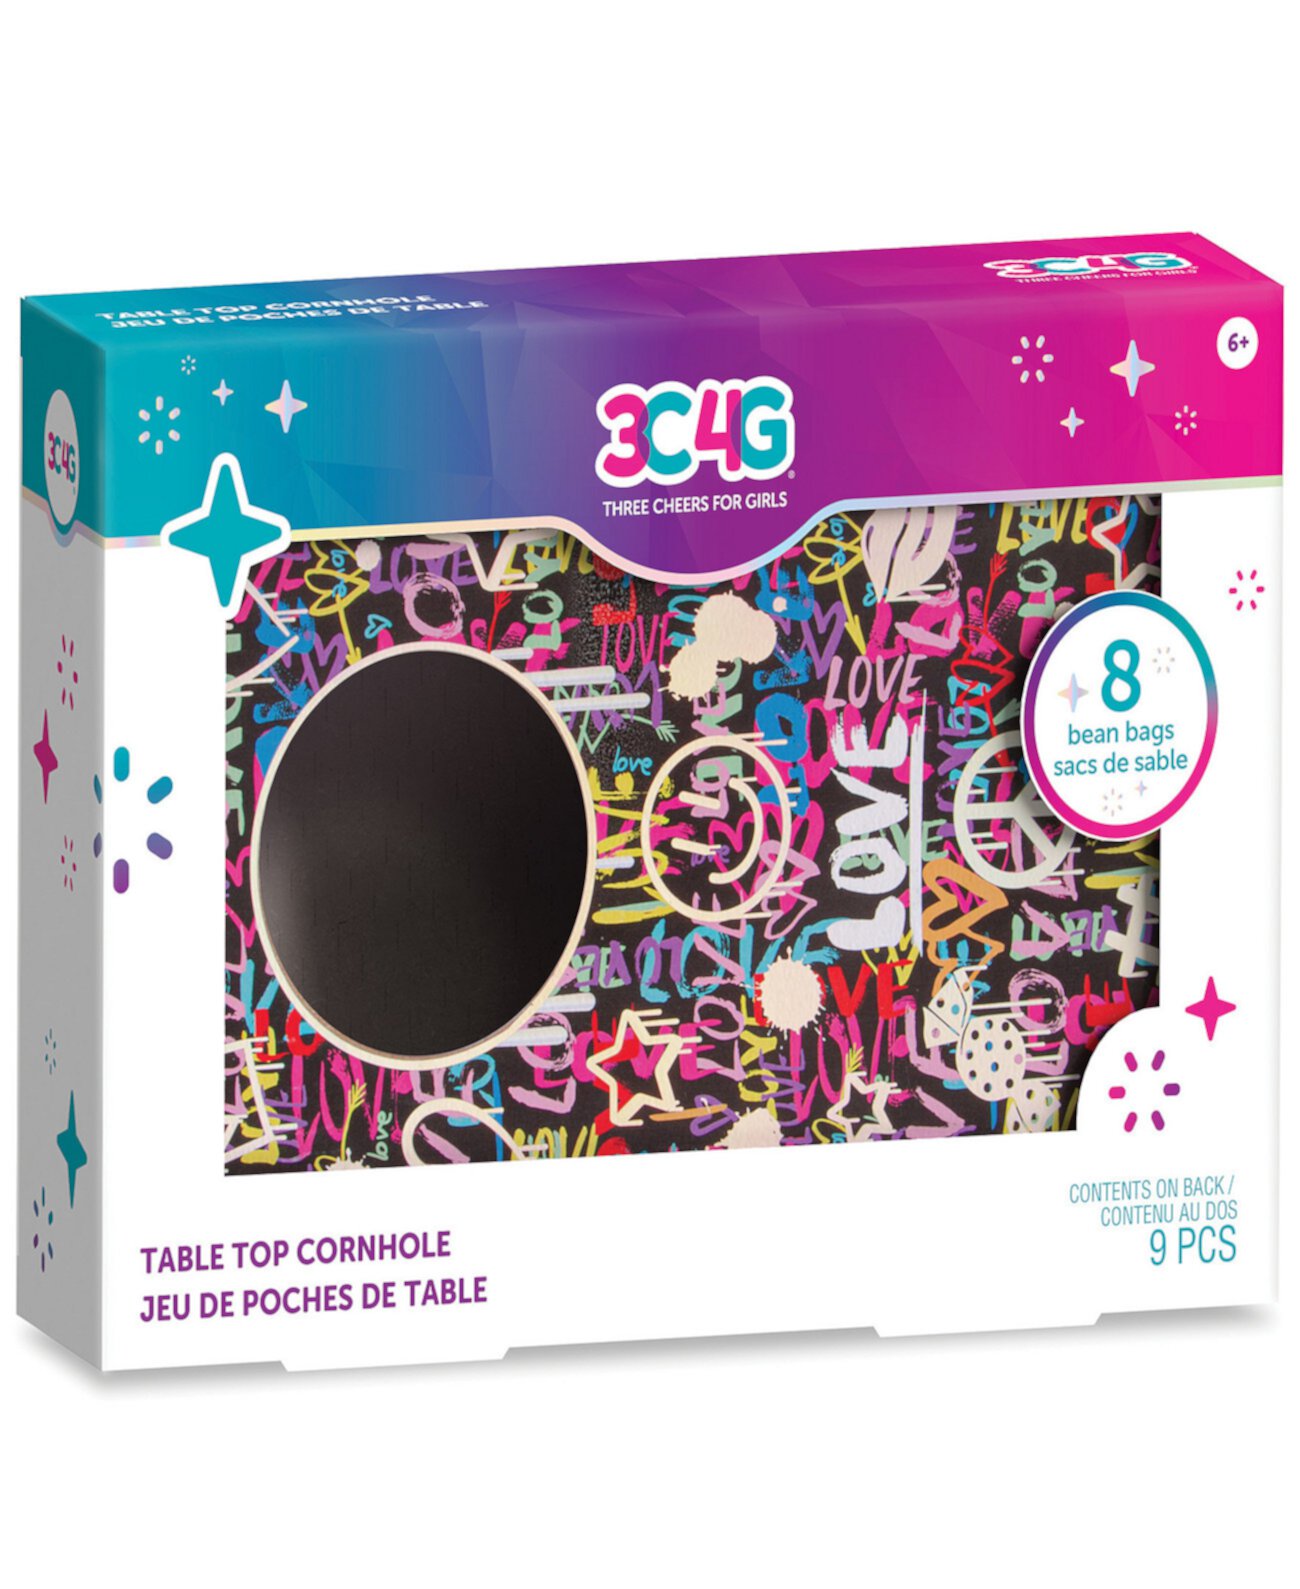 3C4G Столешница для граффити Cornhole — 7 x 10 дюймов с 8 мини-мешками с фасолью розового синего цвета, «Сделай это по-настоящему», для девочек-подростков, настольная доска для Cornhole, мини-игровой набор для Cornhole, портативный, можно играть где угодно Three Cheers For Girls